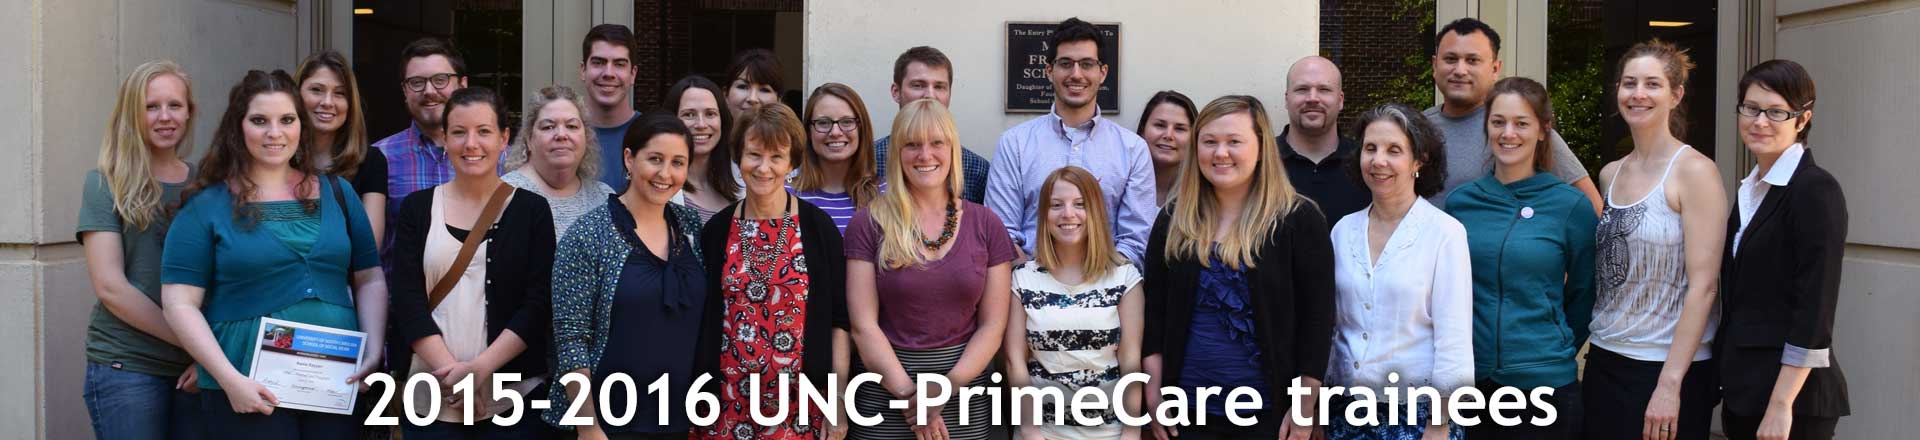 2015-2016 UNC-PrimeCare trainees